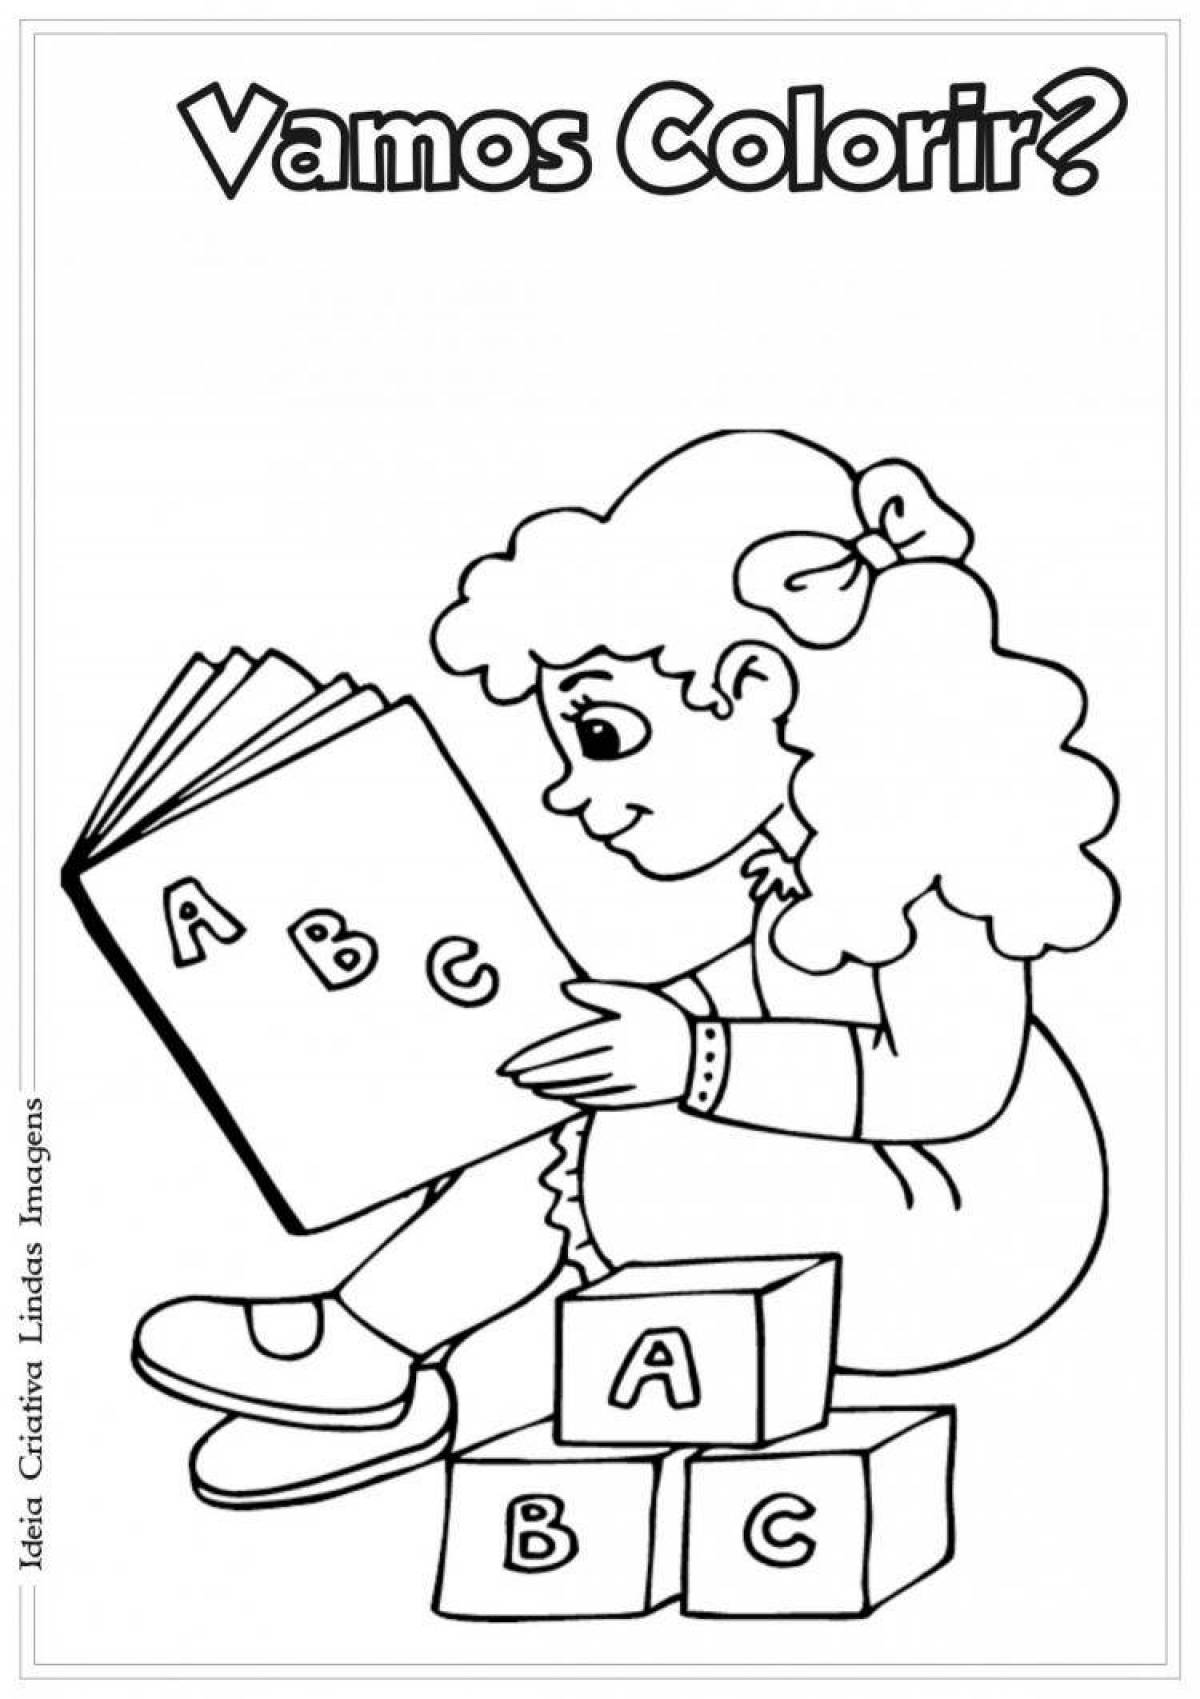 Creative girl reading a coloring book